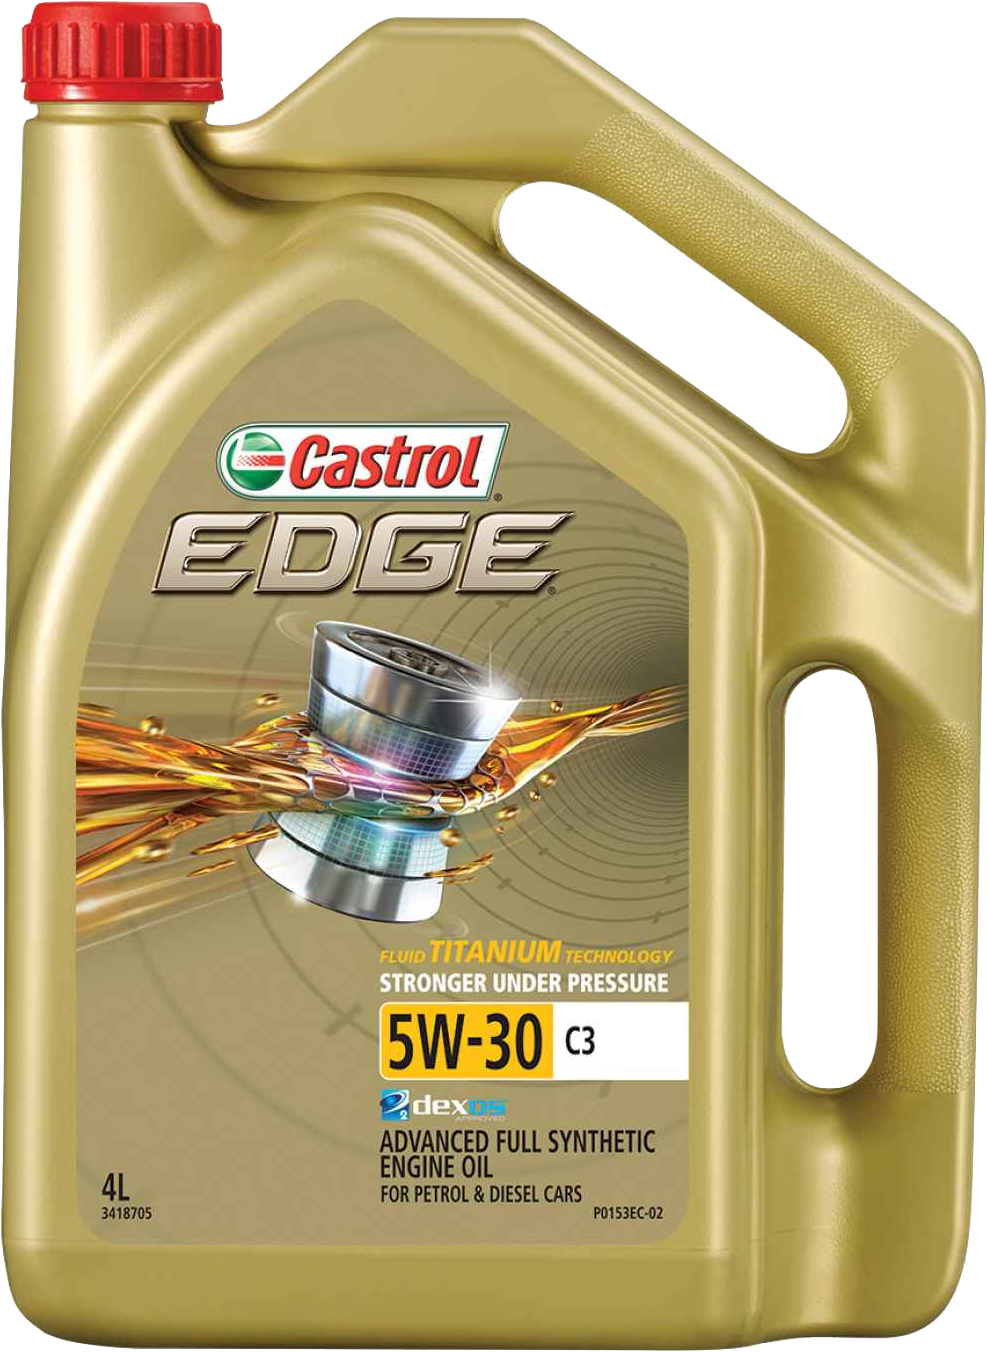 Castrol Edge 5w30 a3/b4. Castrol 5w30 504/507. Castrol Edge 5w-40 a3/b4. Castrol GTX 5w-30 dex2.